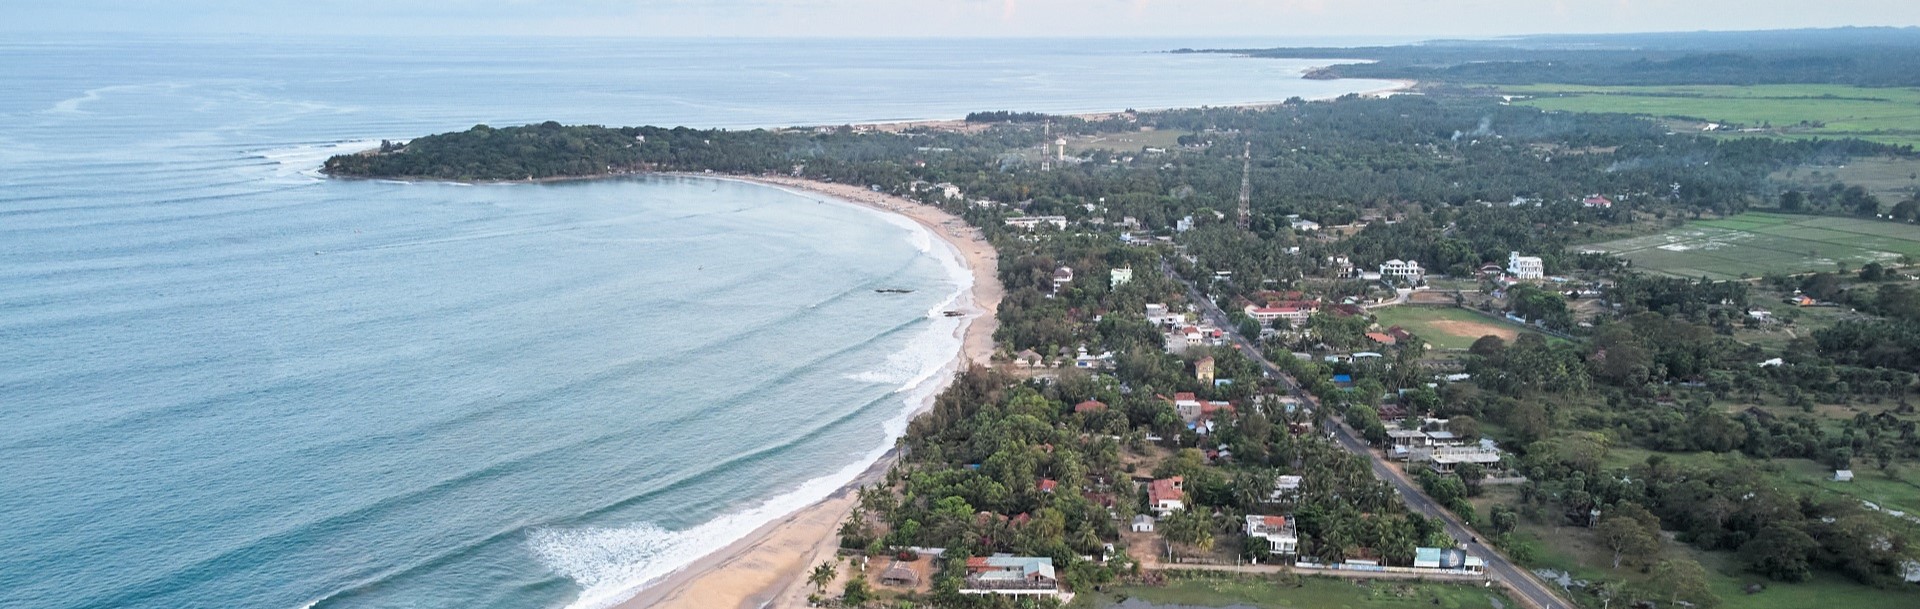 Sri Lanka - East Coast